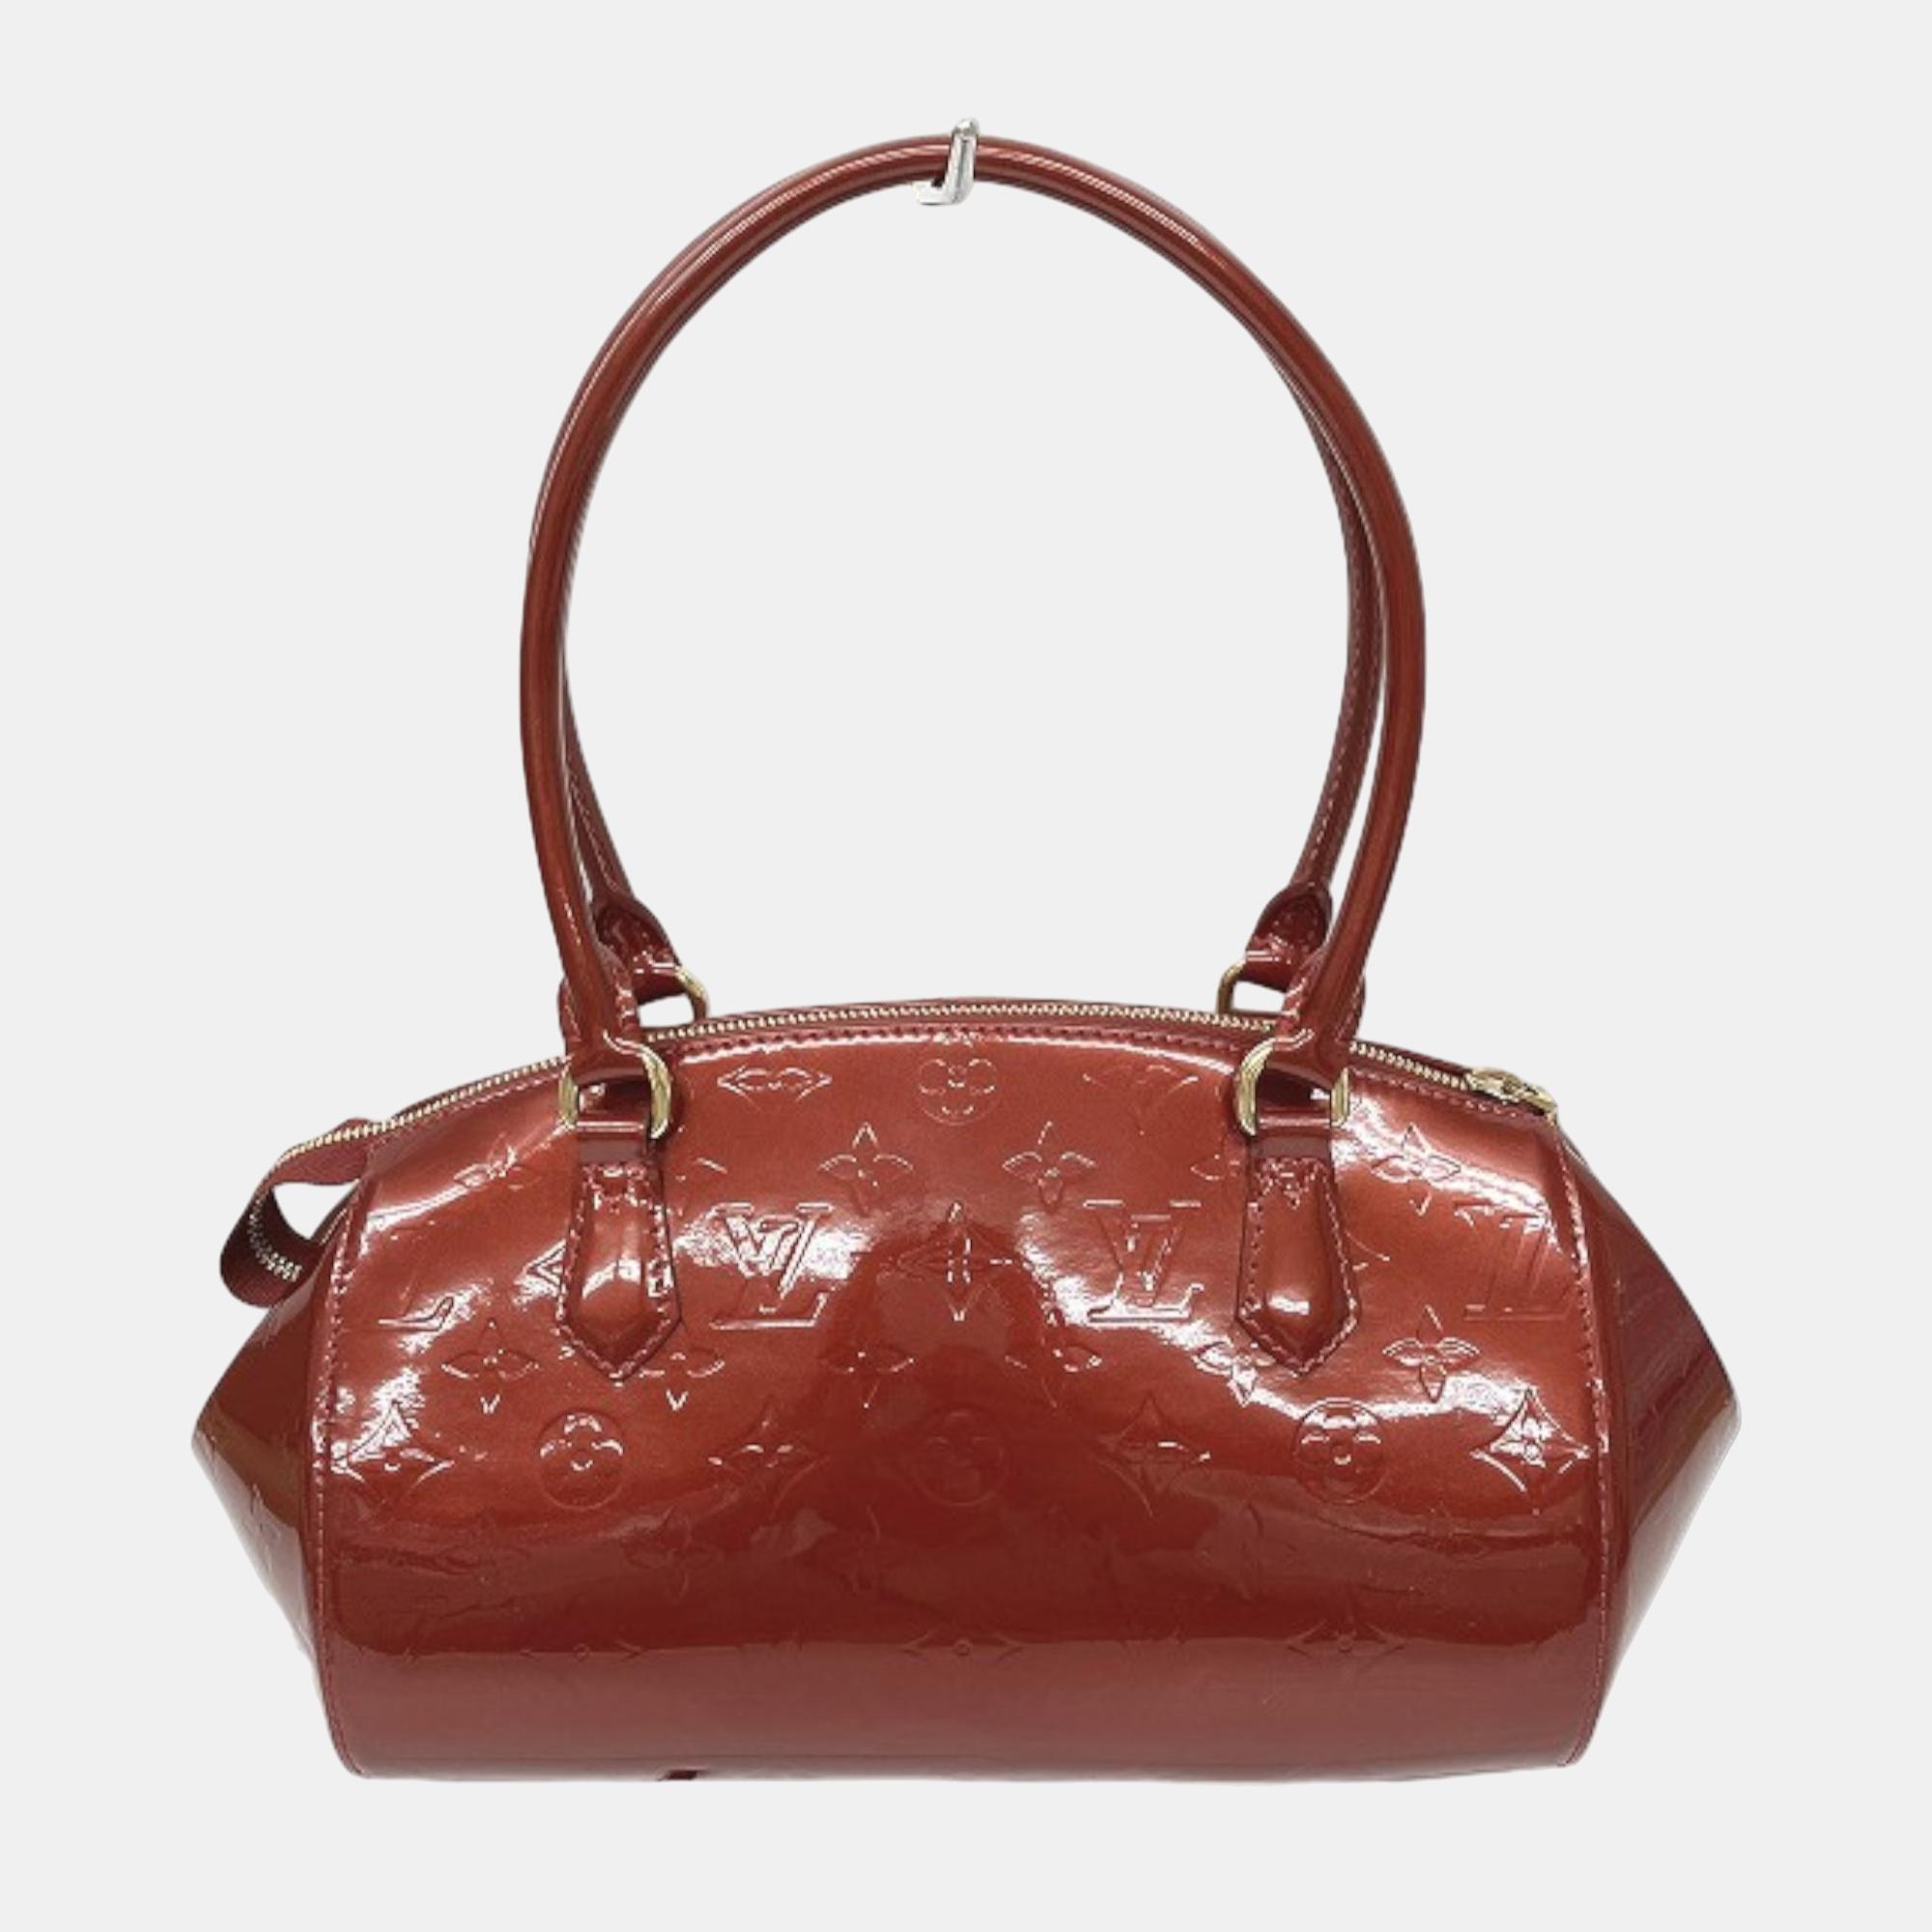 Louis Vuitton Red Monogram Vernis Sherwood PM Handbag